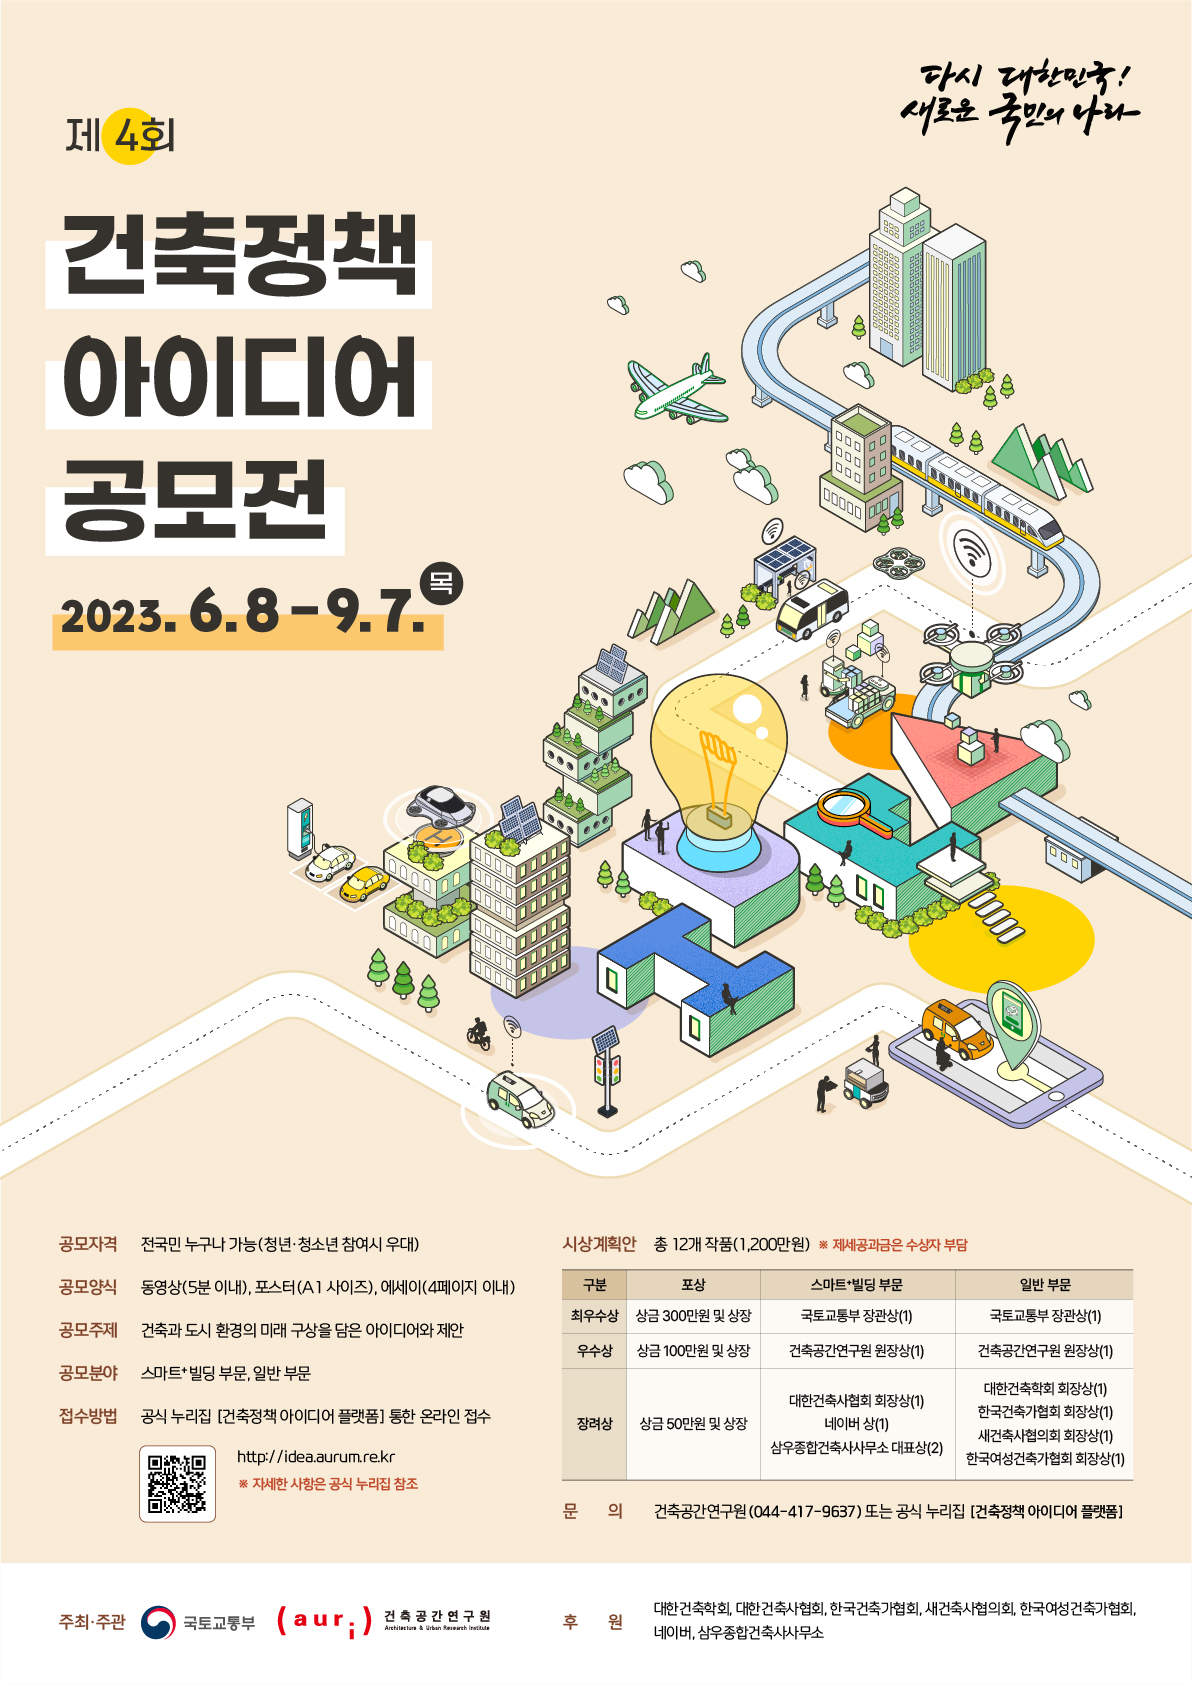 국토부&#44; “제4회 건축정책 아이디어 공모전” 개최...총 상금 1&#44;200만원